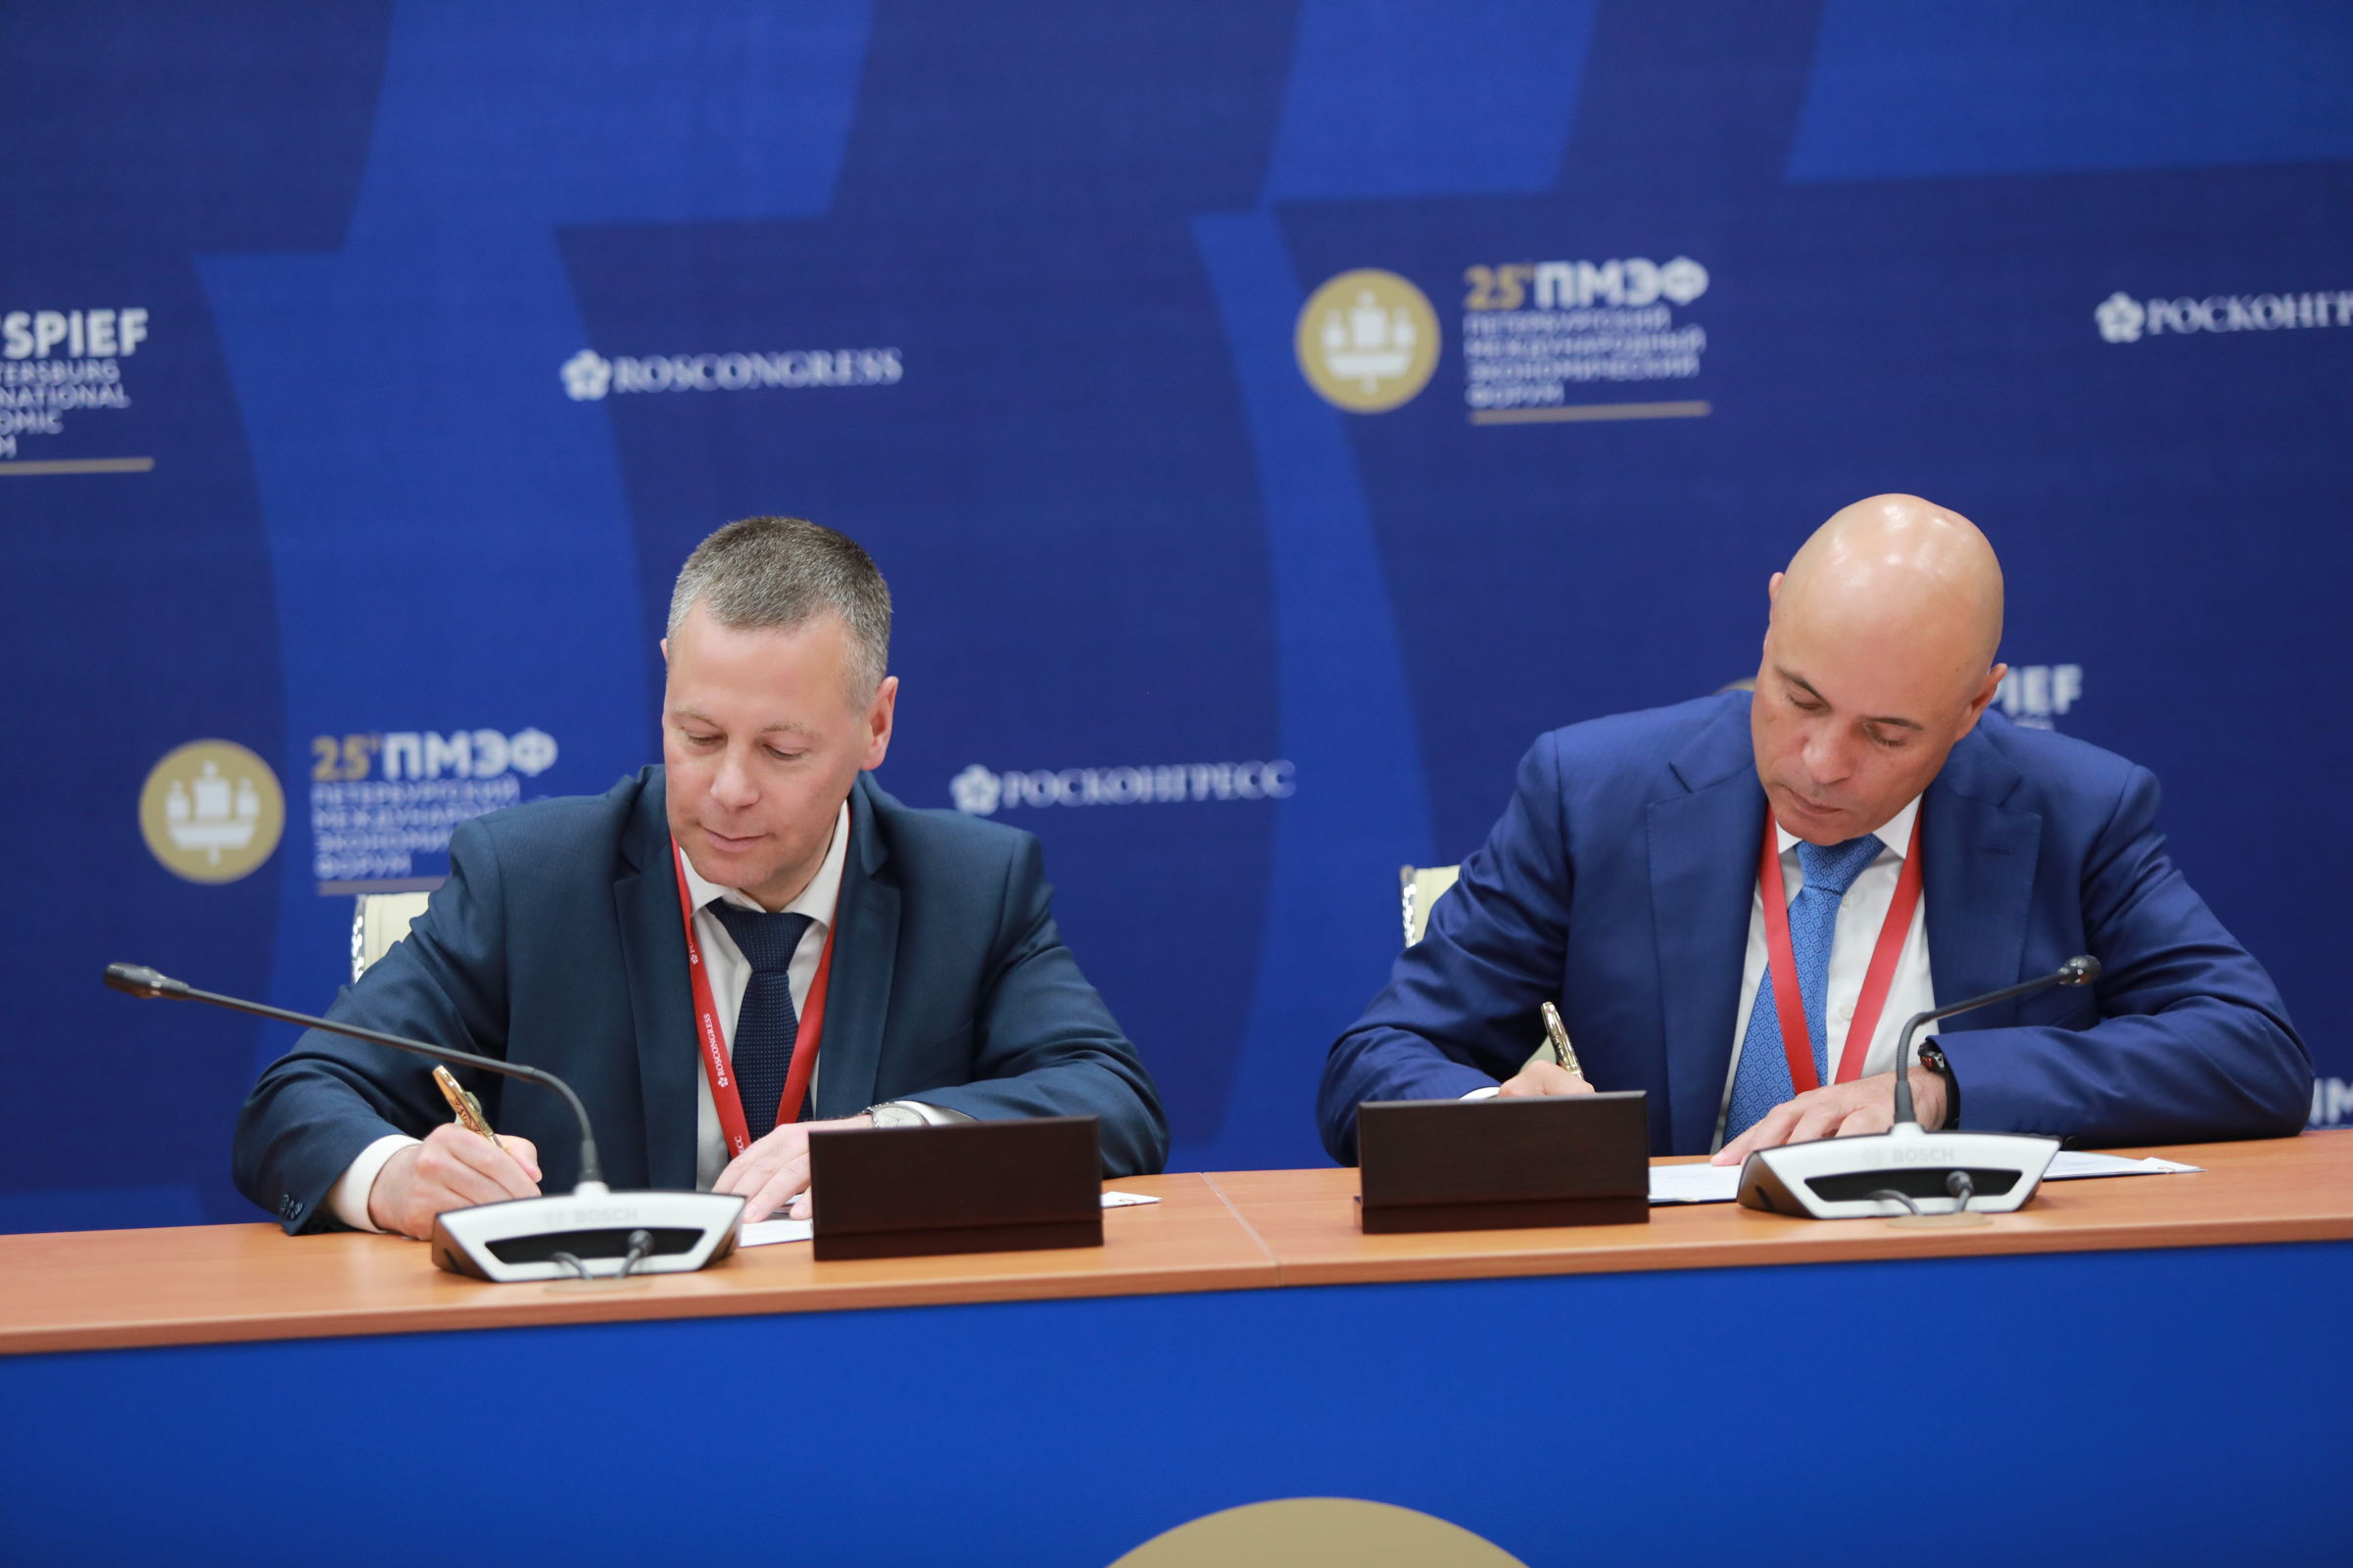 Михаил Евраев: необходимо укреплять связи между регионами, по максимуму использовать те ресурсы, которые есть у каждого